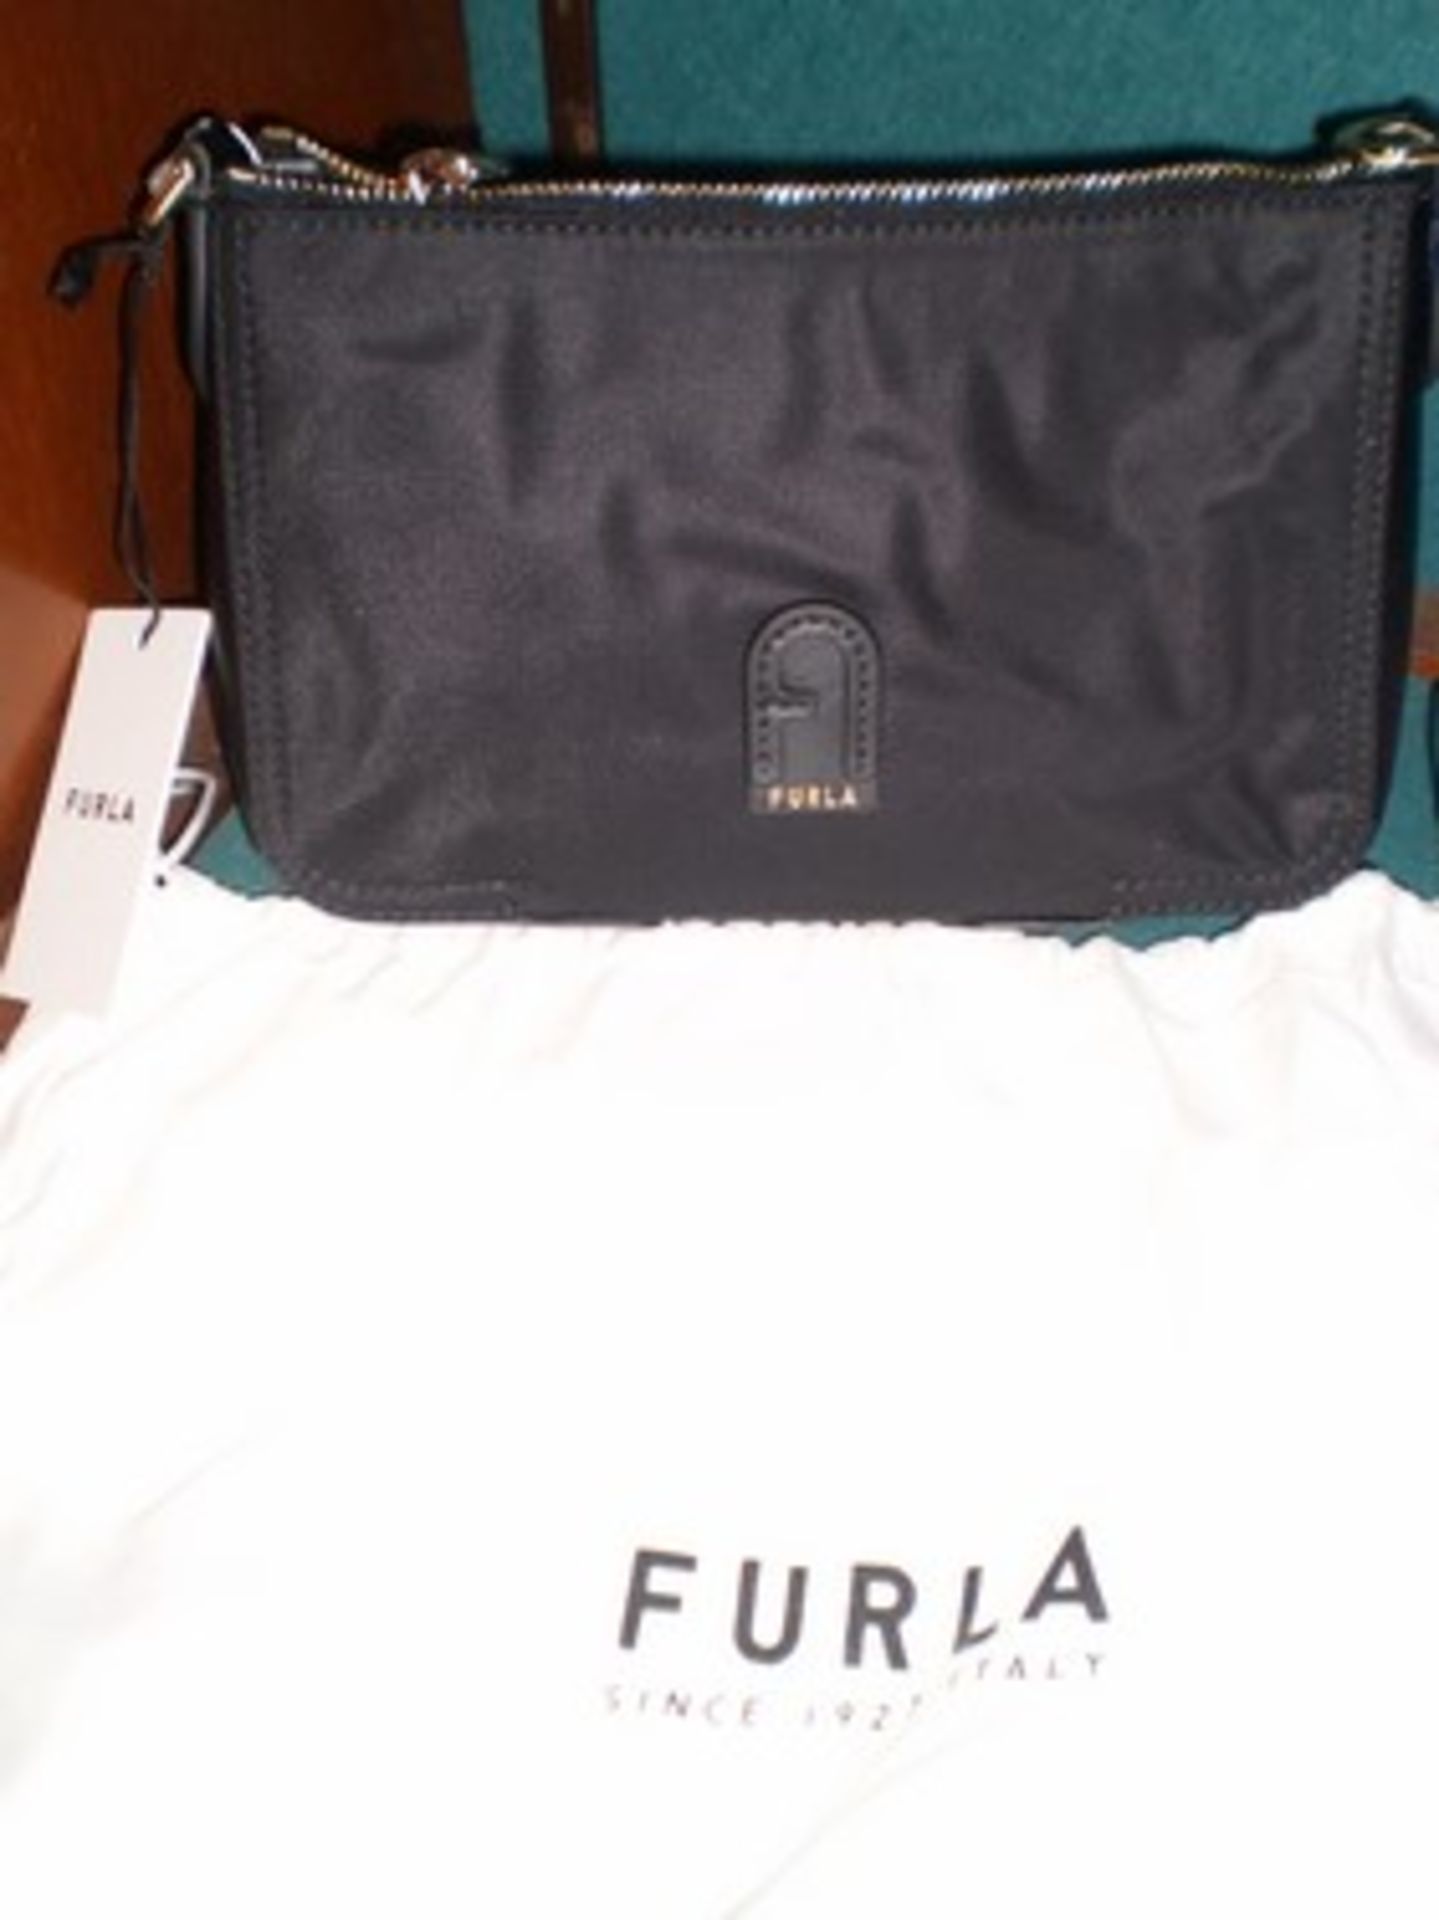 1 x Furla Alena nylon crossbody handbag and 1 x Kipling Abanu small bag - new with tags (C9B)